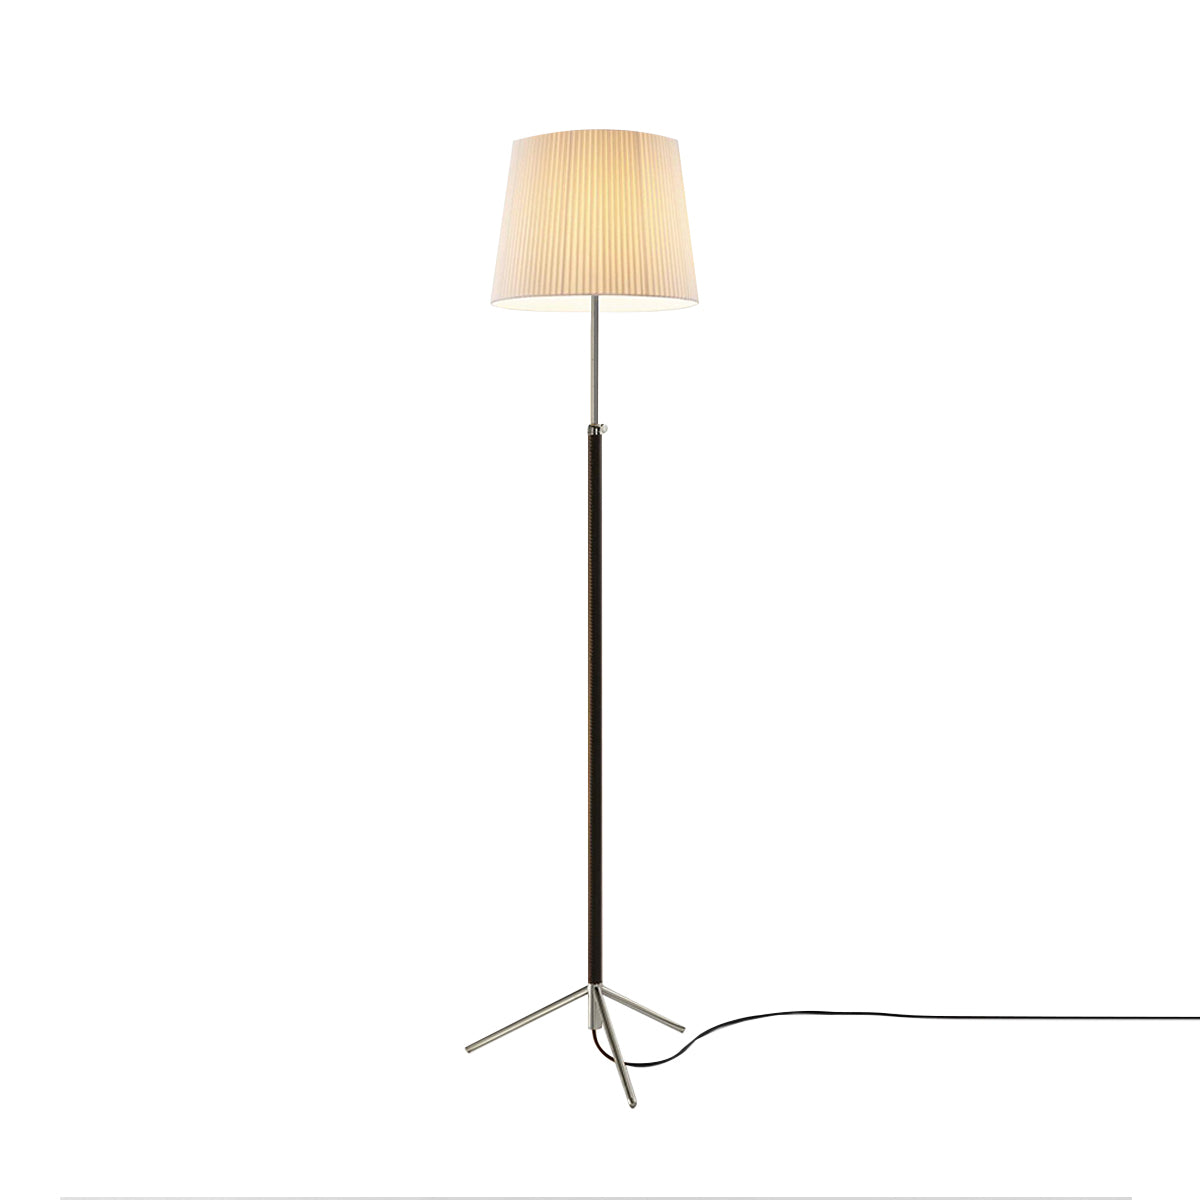 Pie de Salón Floor Lamp: G3 + Chrome-Plated + Natural